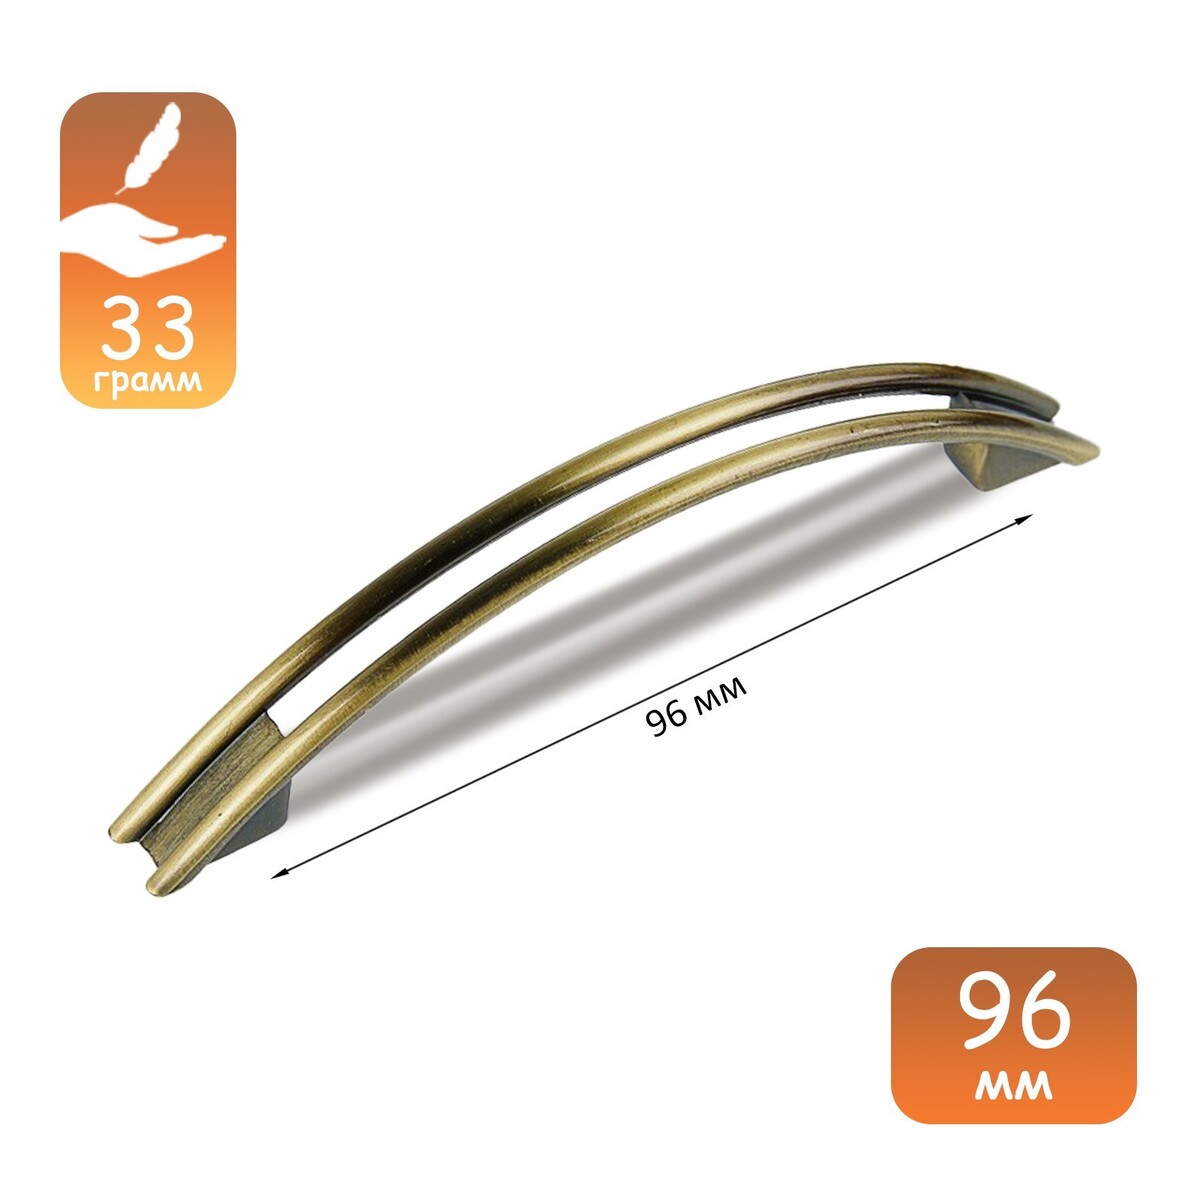 Ручка-скоба cappio rsc001, м/о 96 мм, цвет бронза ручка скоба elegant рс150ab 96 мм керамическая бронза